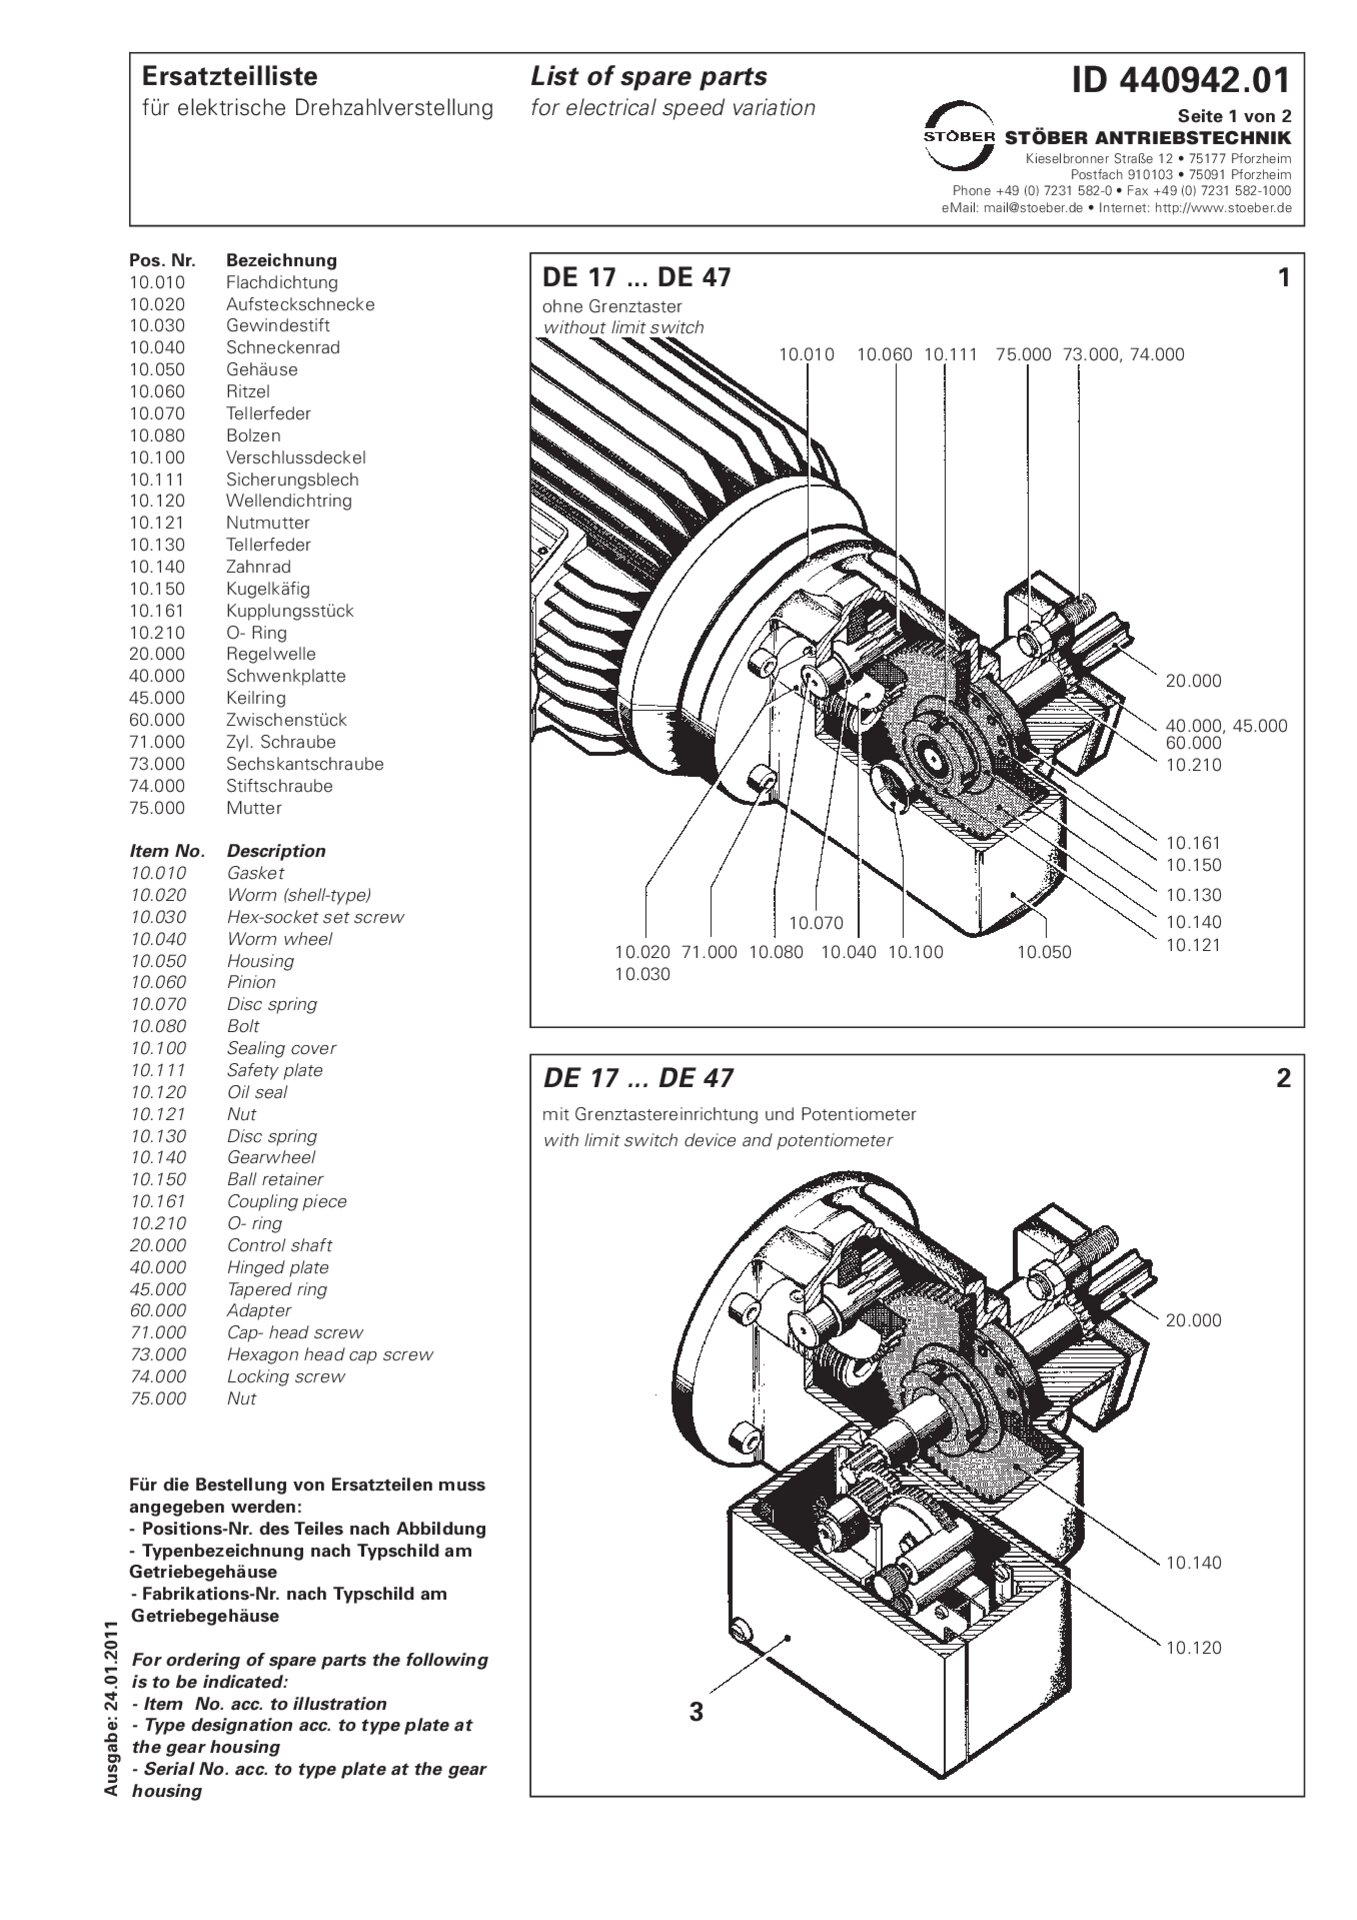 Spare parts list DE17/DE27/D37/DE47 for electrical speed variation